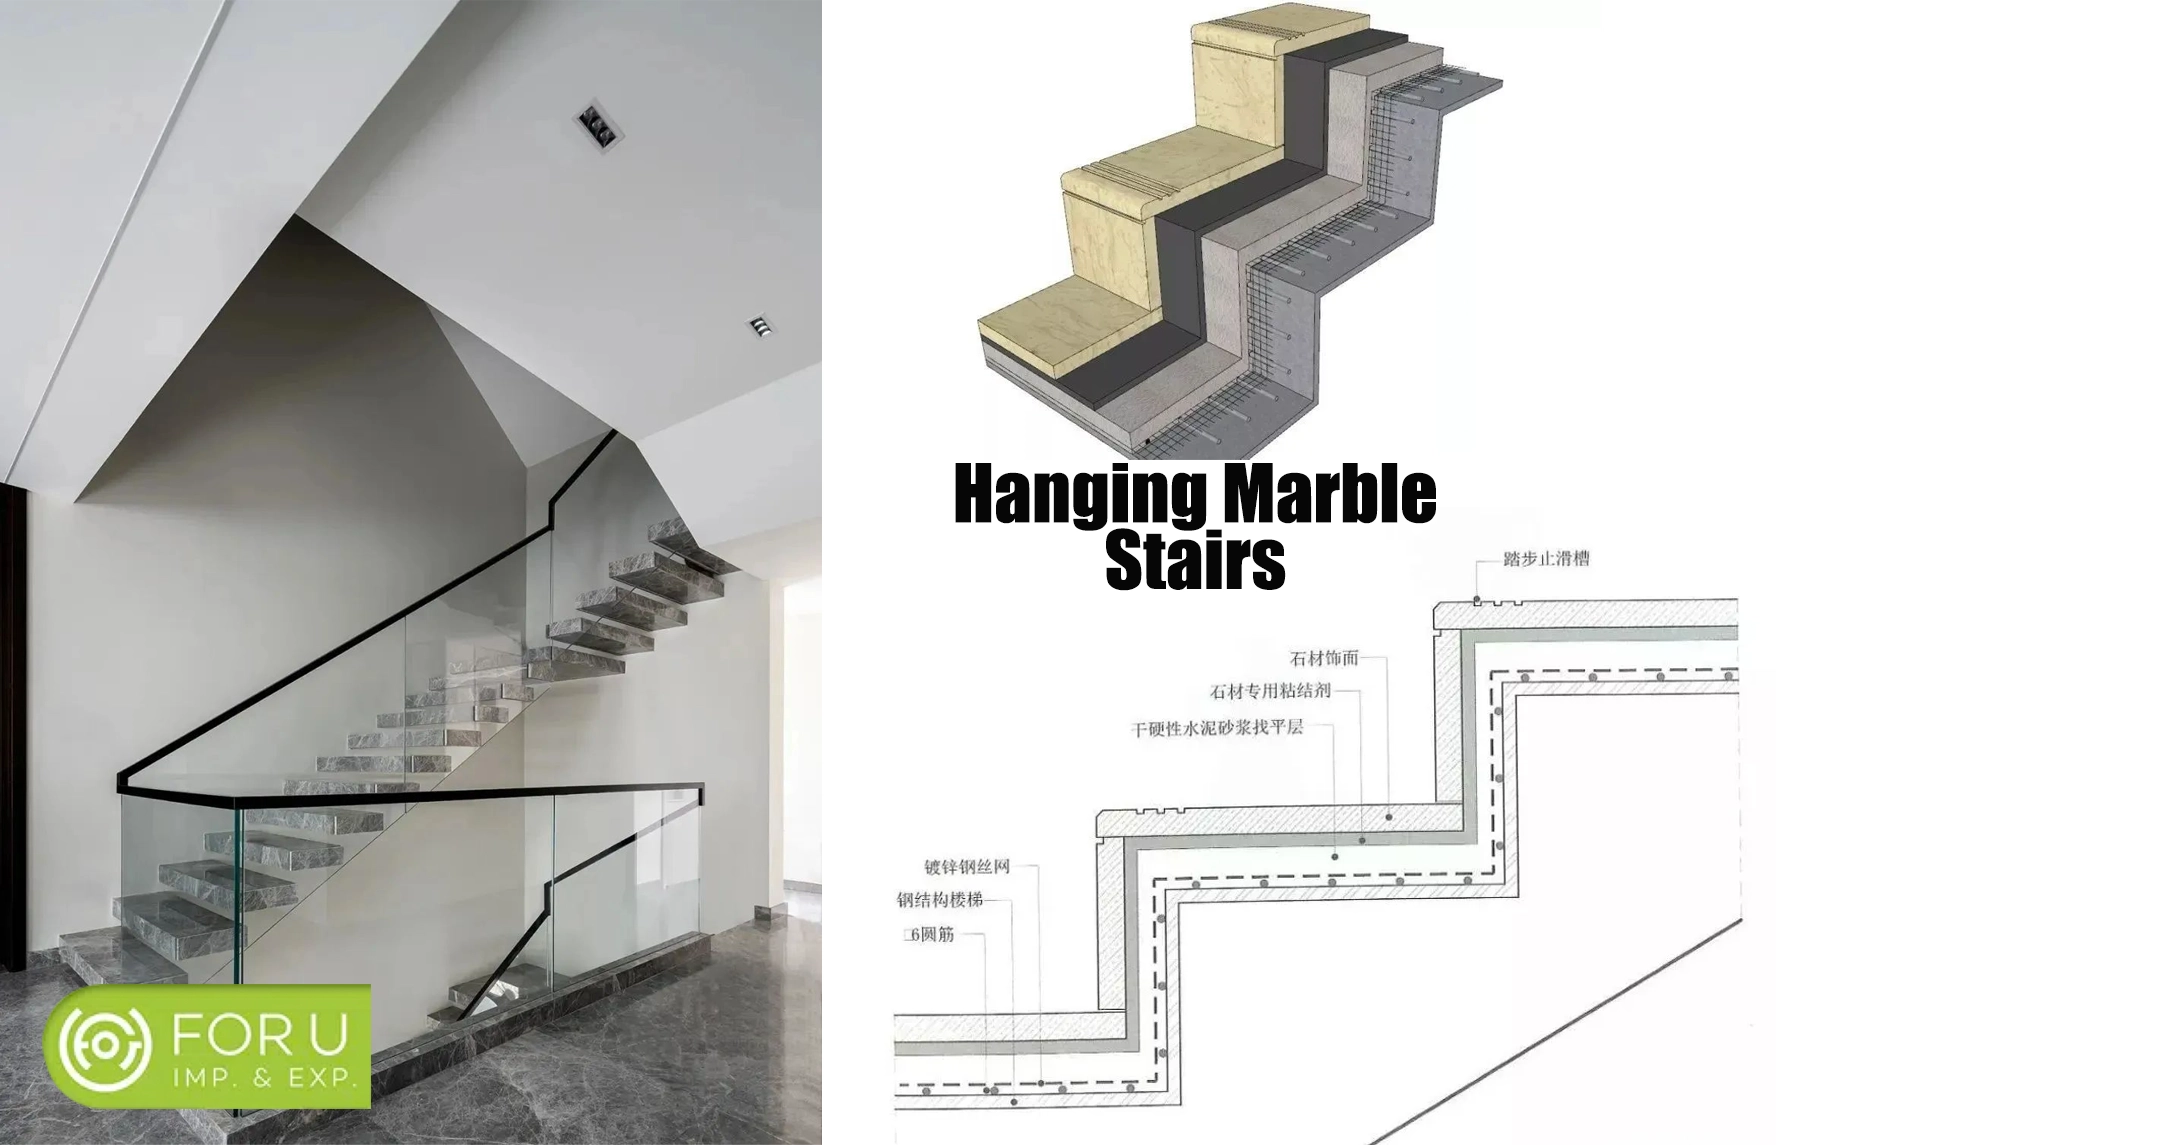 Standard Marble Stairs Designs Drawings